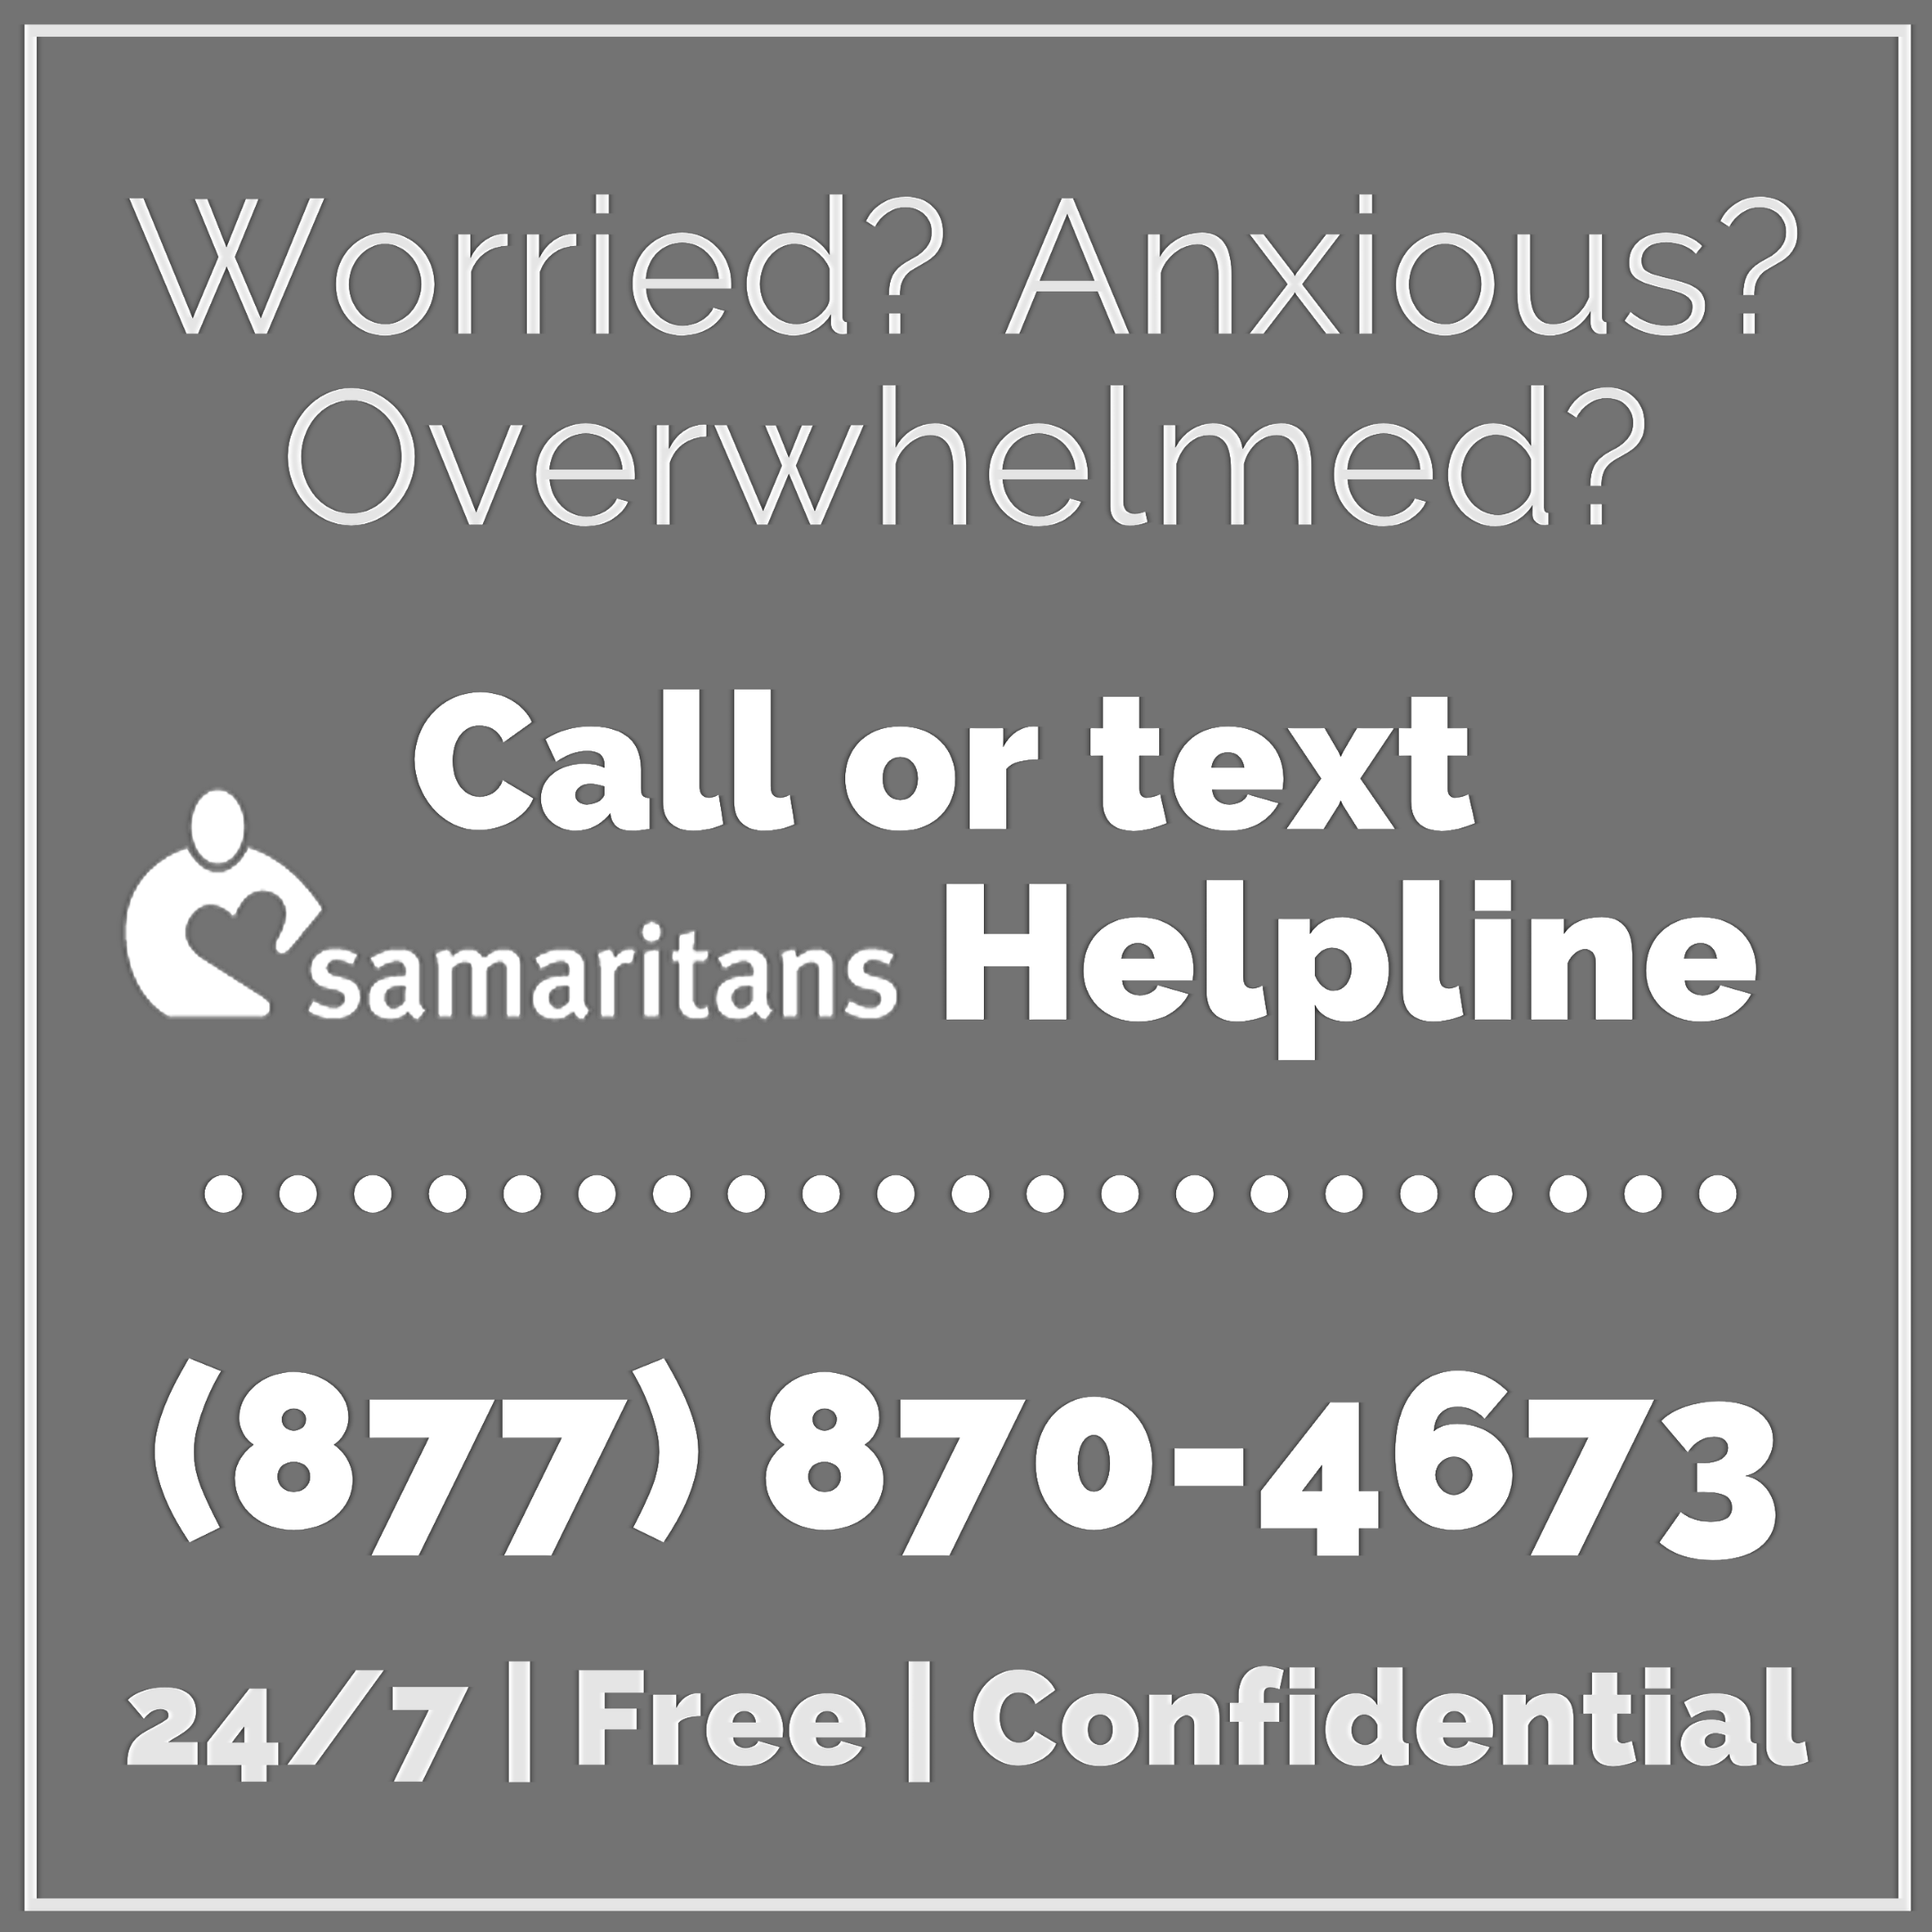 Samartians Helpline: 877-870-4673 Ad